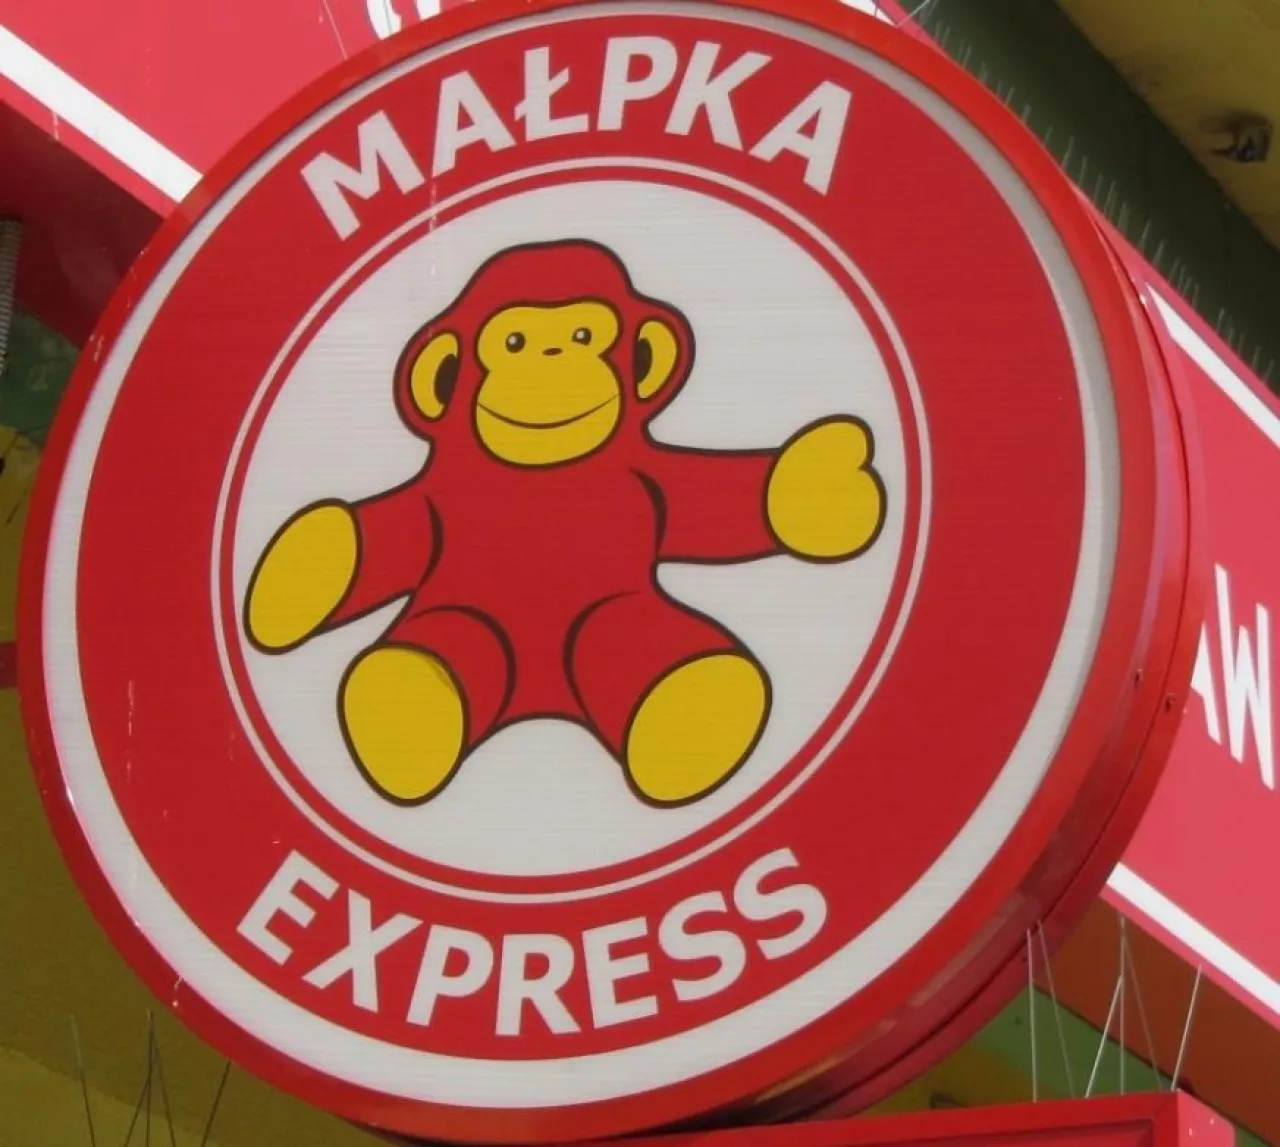 Małpka Express, źródło: Archiwum Wiadomości Handlowych (fot. Konrad Kaszuba)